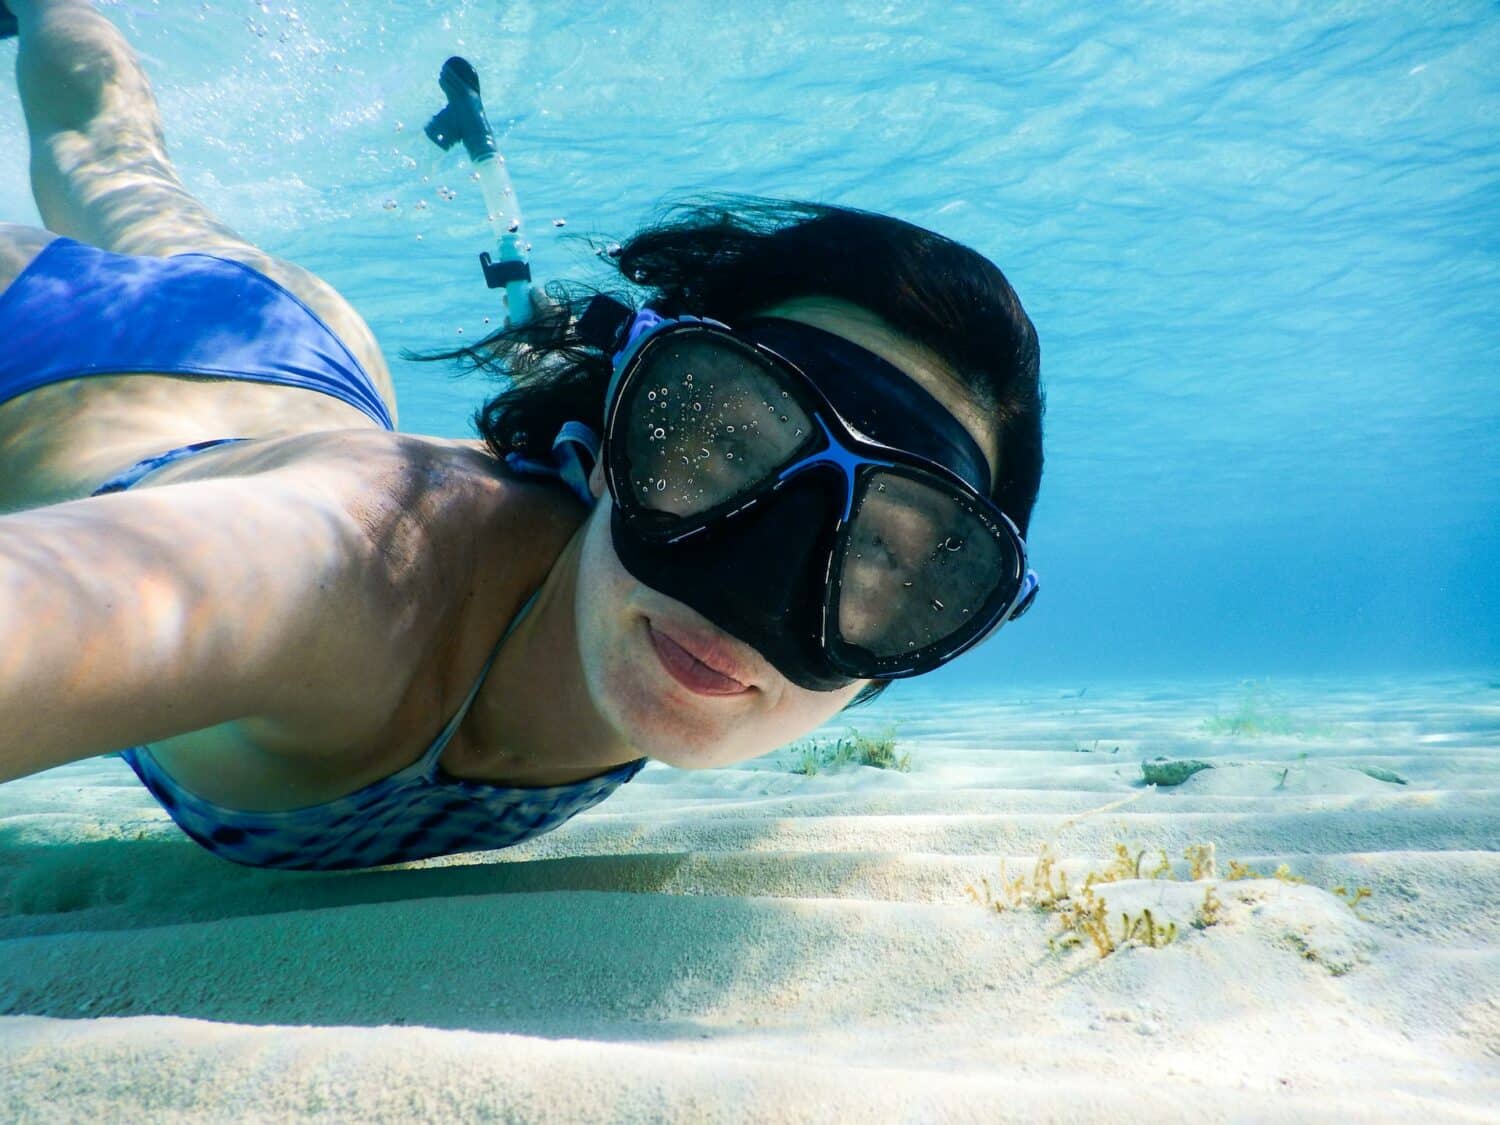 Mulher de biquíni azul tirando selfie embaixo d'água com uma máscara de mergulho no rosto.